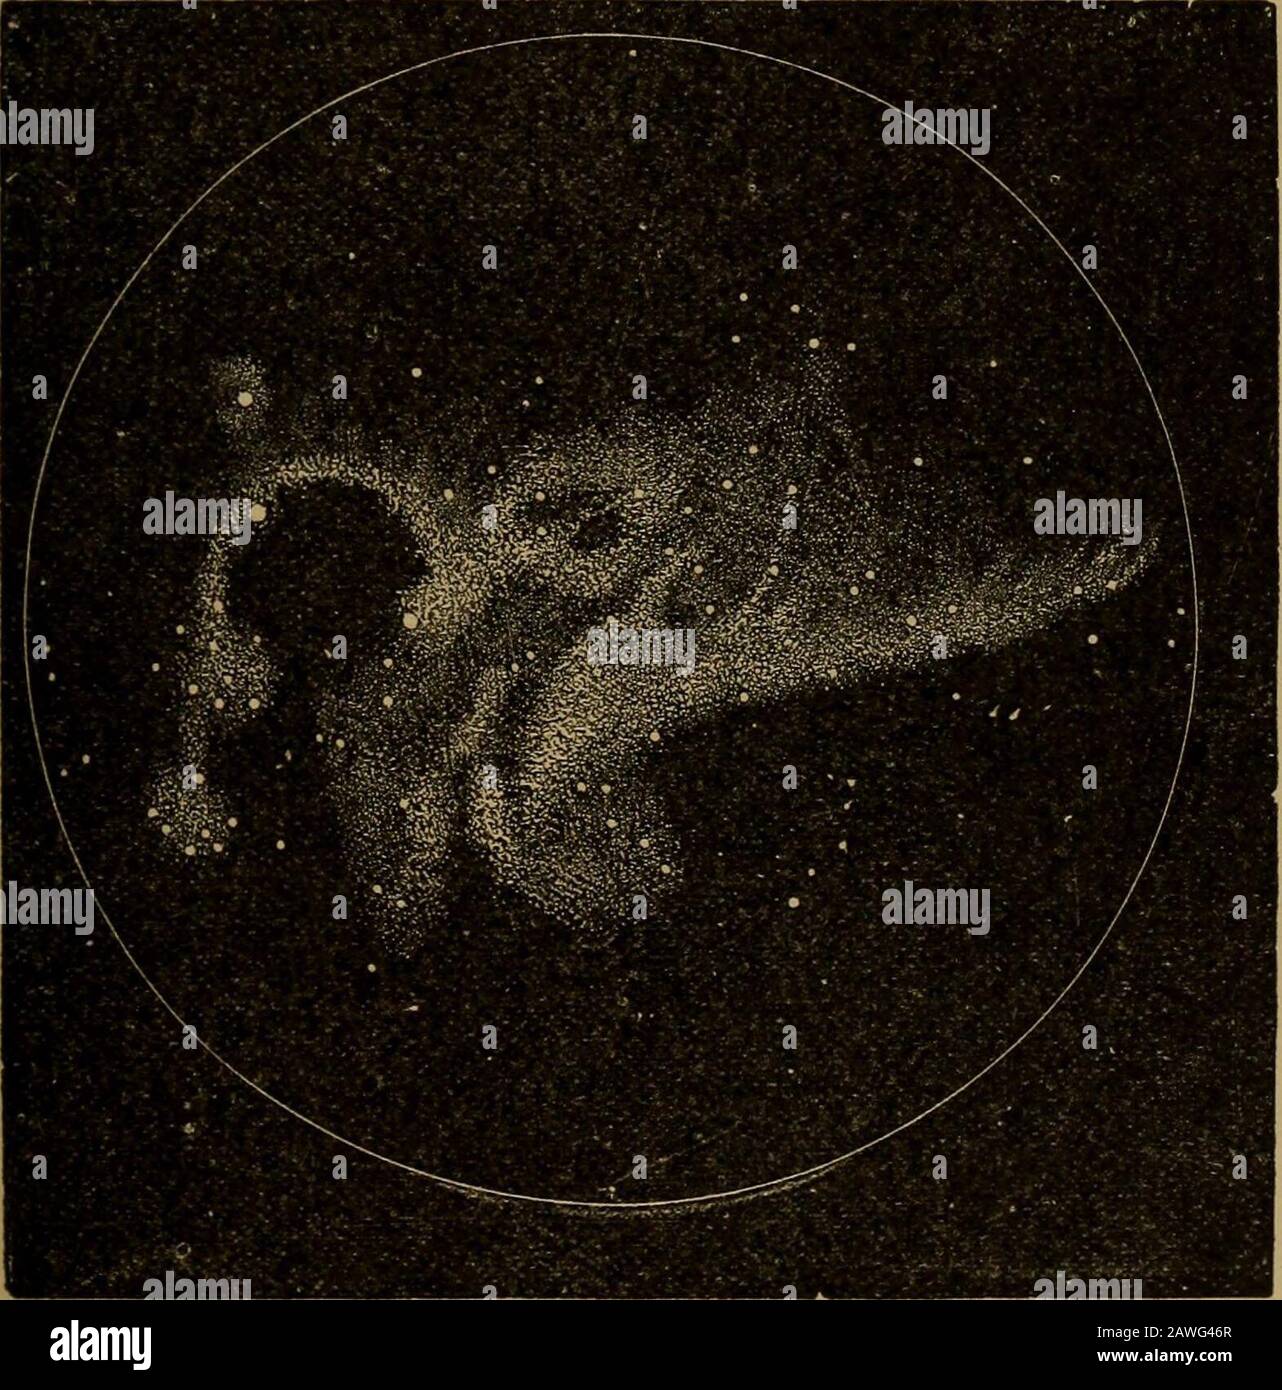 World-Life; oder, Vergleichende Geologie. Sagen Sie, dass es in der Struktur der MagellanicClouds wirklich schwierig ist, nicht zu glauben, dass wir eindeutige Beweise für die Ausübung einer solchen Aggregationsleistung sehen.-.4&lt;i(ire5s, British Association, 295. TSchellen: Spectral Analysis, 371; Sir W. Herschel, Phil. Trans., 1811;Otto Struve, Monatsvermerke Astronom. Soc, London. März 1856, Bd. xvi,S. 139; Gautier, Archives des Sciences Physiques et Naturelles de Geneve. 18fi2, übersetzt in Smithsonian Report, 299; Secchi, Comptes Rendus, Ixv, S. C43,Ixvi, 63. X F. Abbot, Proc. Roy. Astron. Soc, Nov. Stockfoto